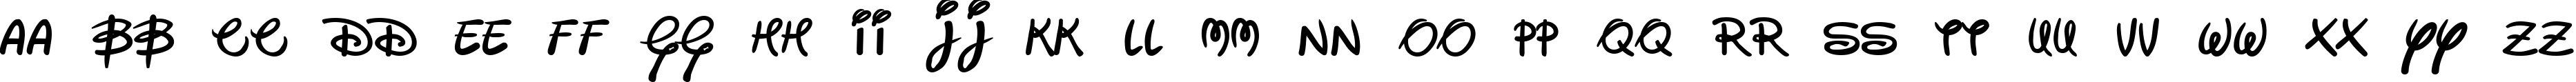 Пример написания английского алфавита шрифтом Walter